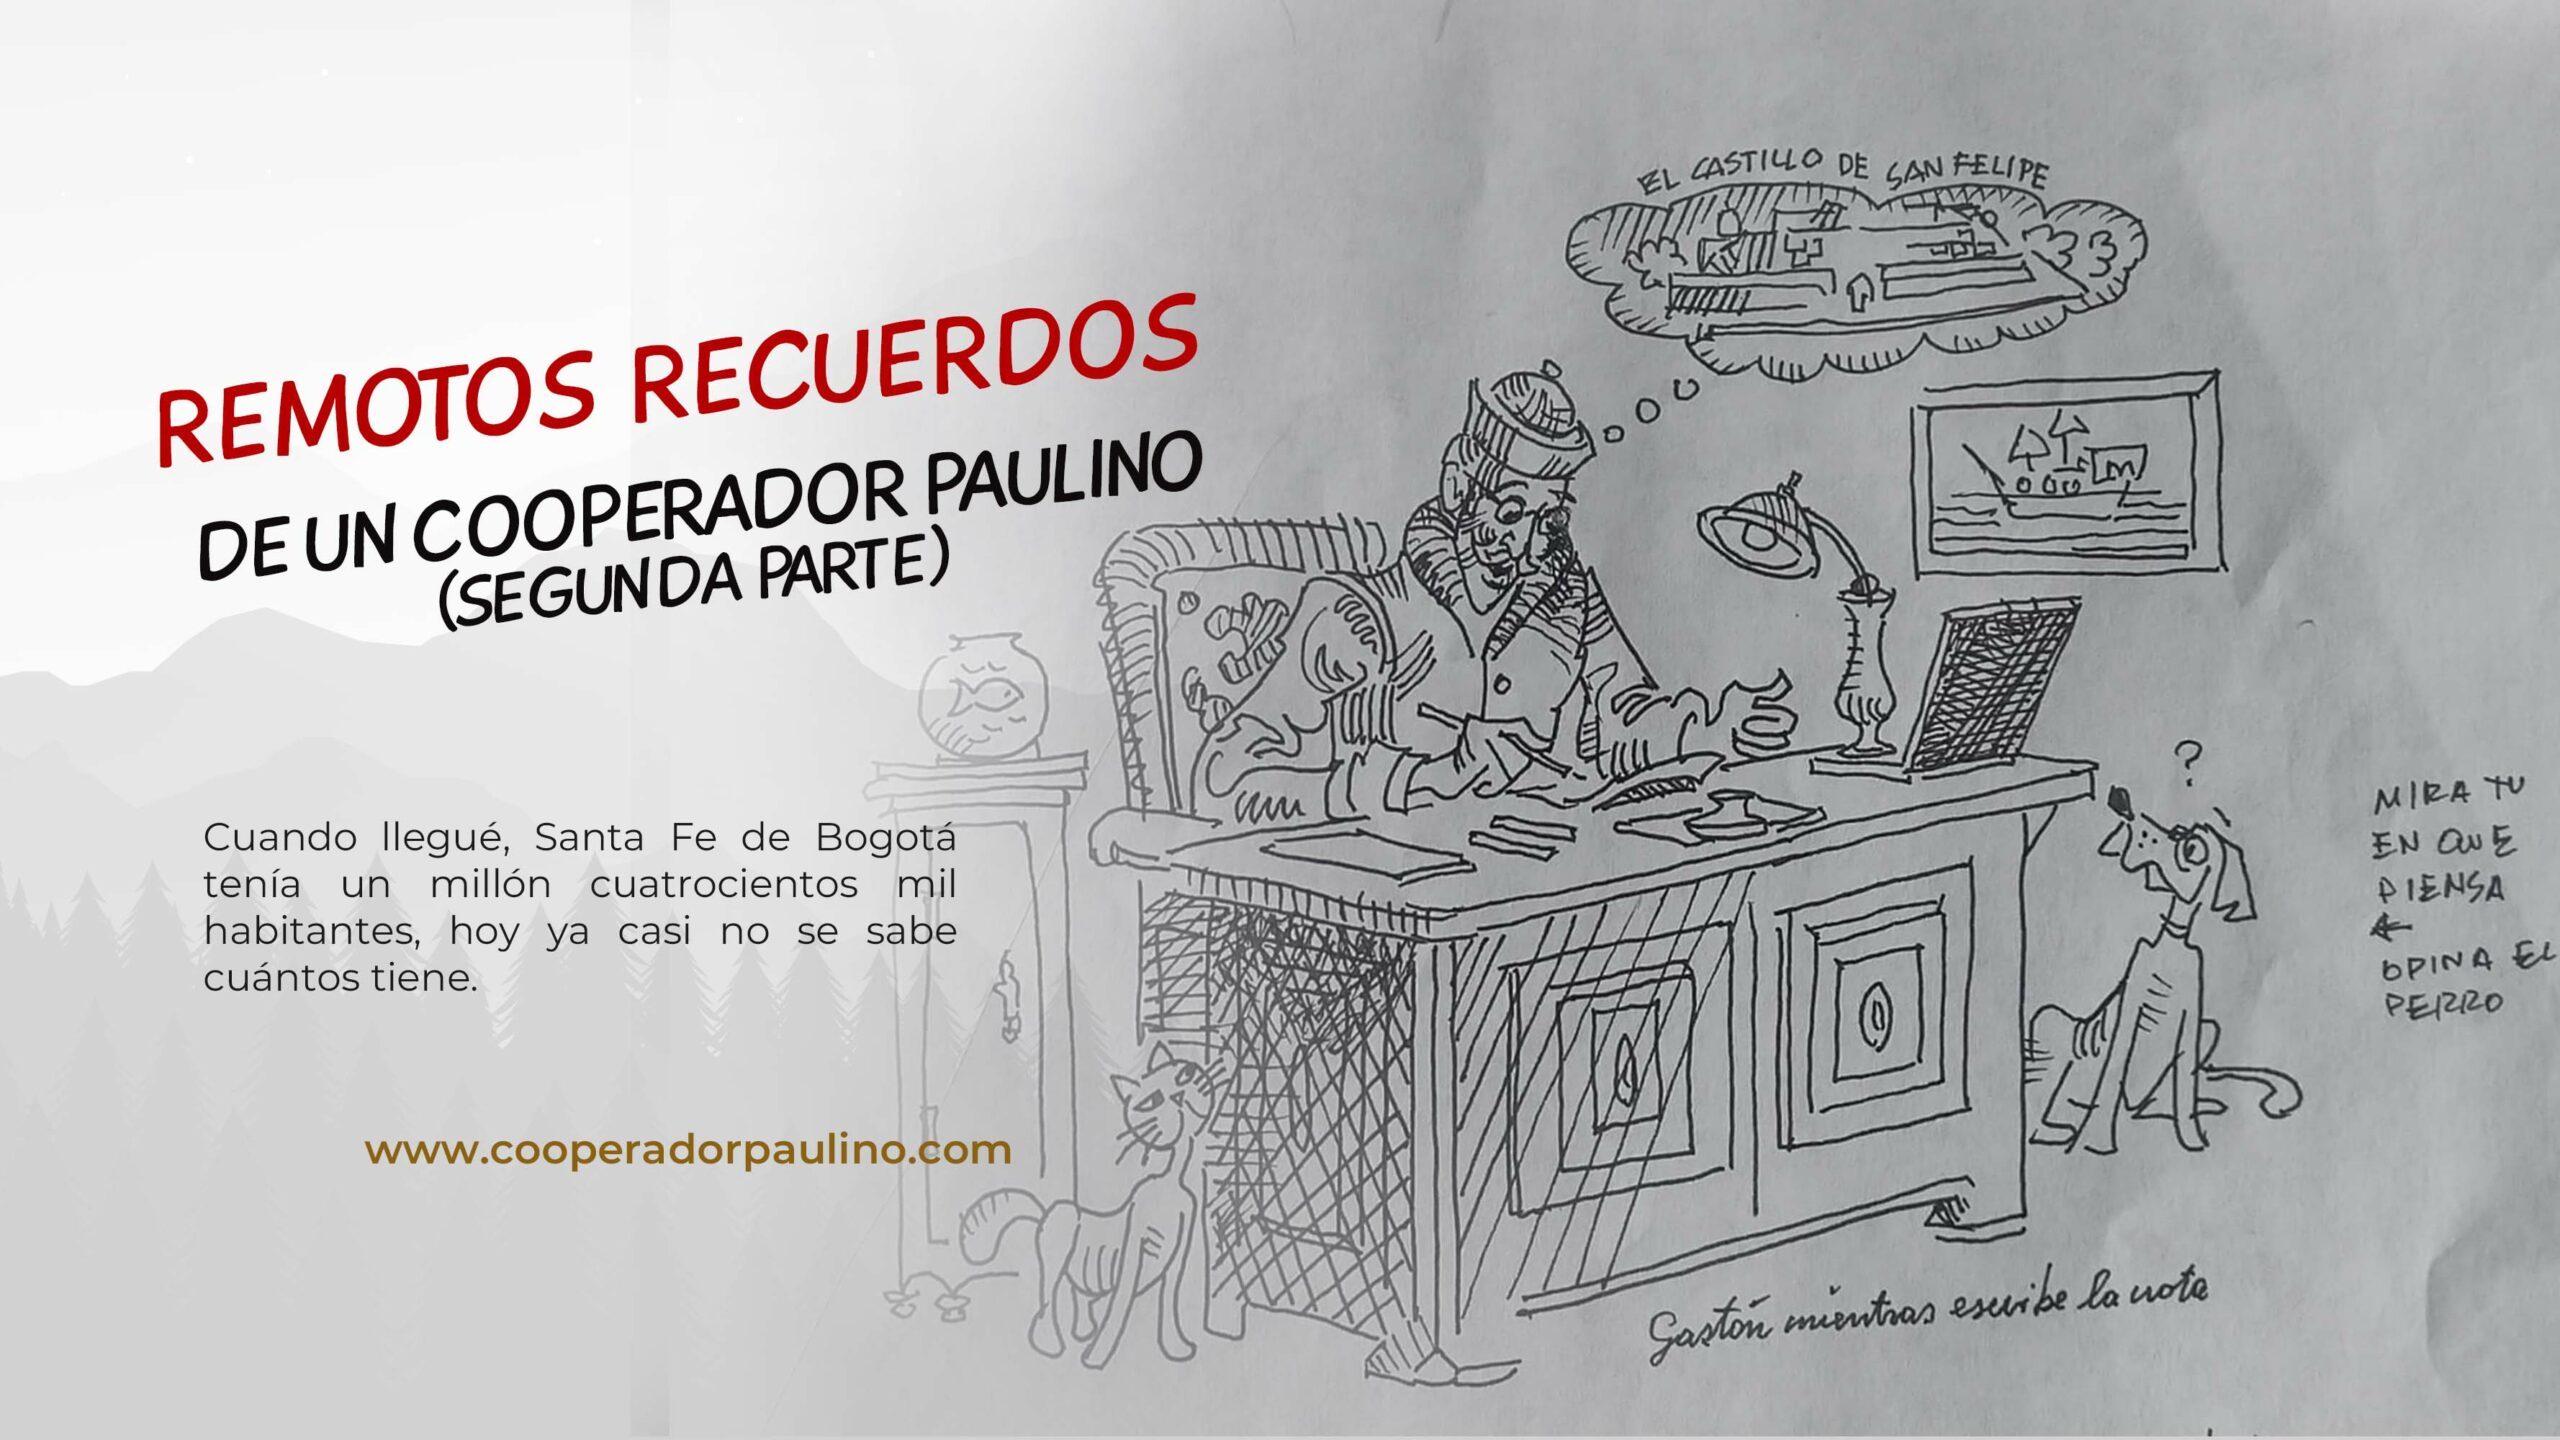 REMOTOS RECUERDOS DE UN COOPERADOR PAULINO (SEGUNDA PARTE)